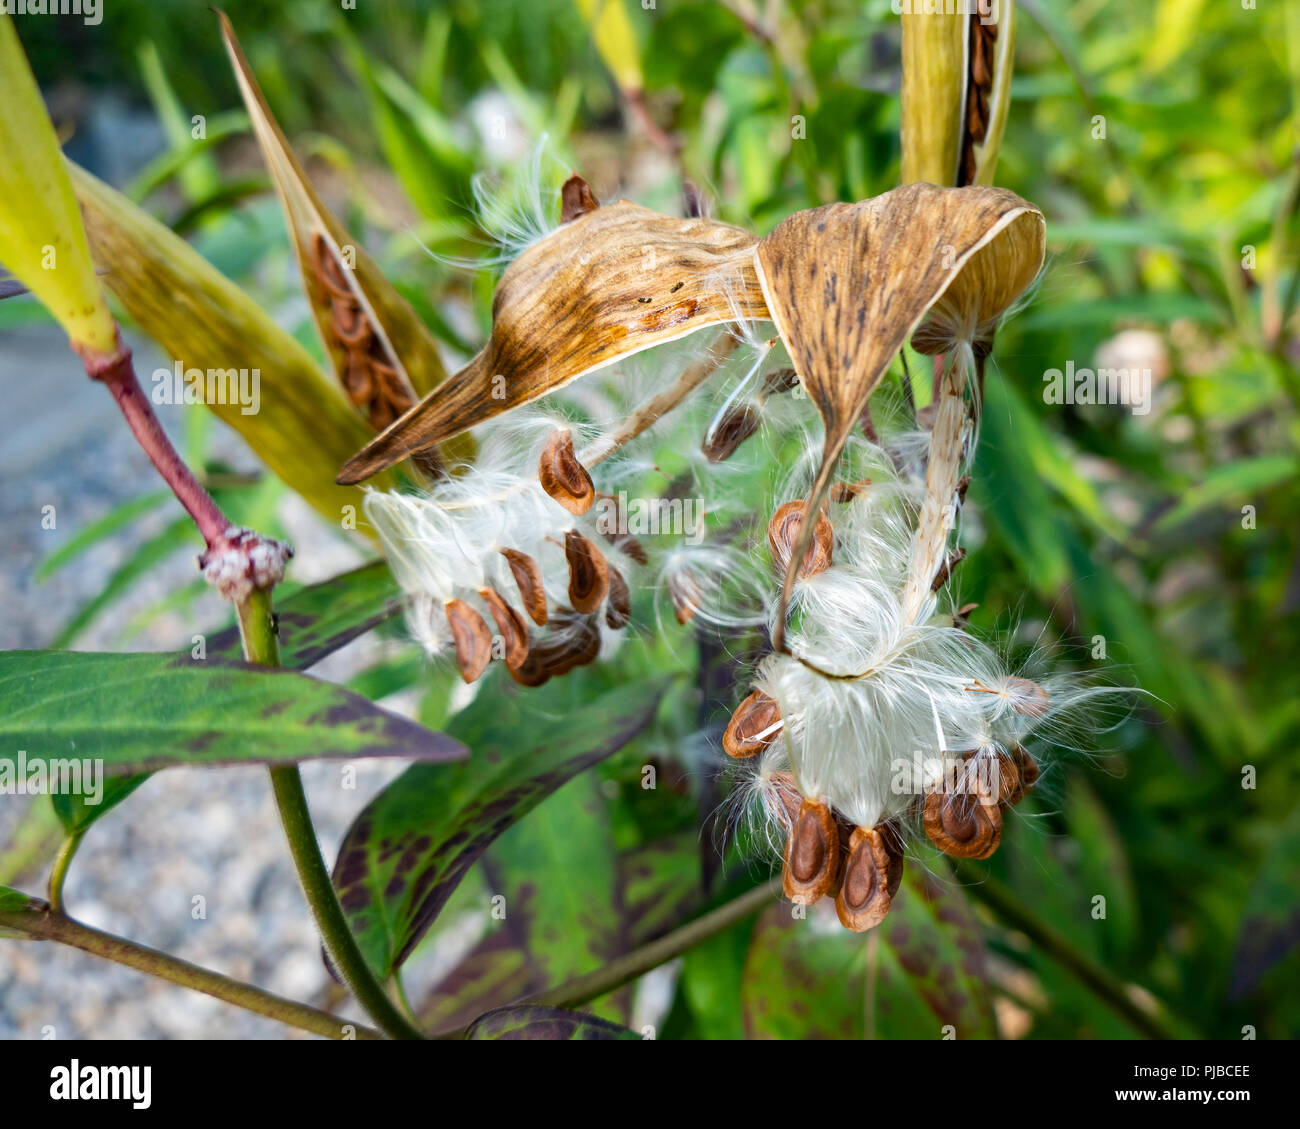 Apertura di cialde di seme su una palude milkweed plant, Asclepias incarnata, in un giardino in speculatore, NY USA con la dispersione di semi per formare nuove piante. Foto Stock